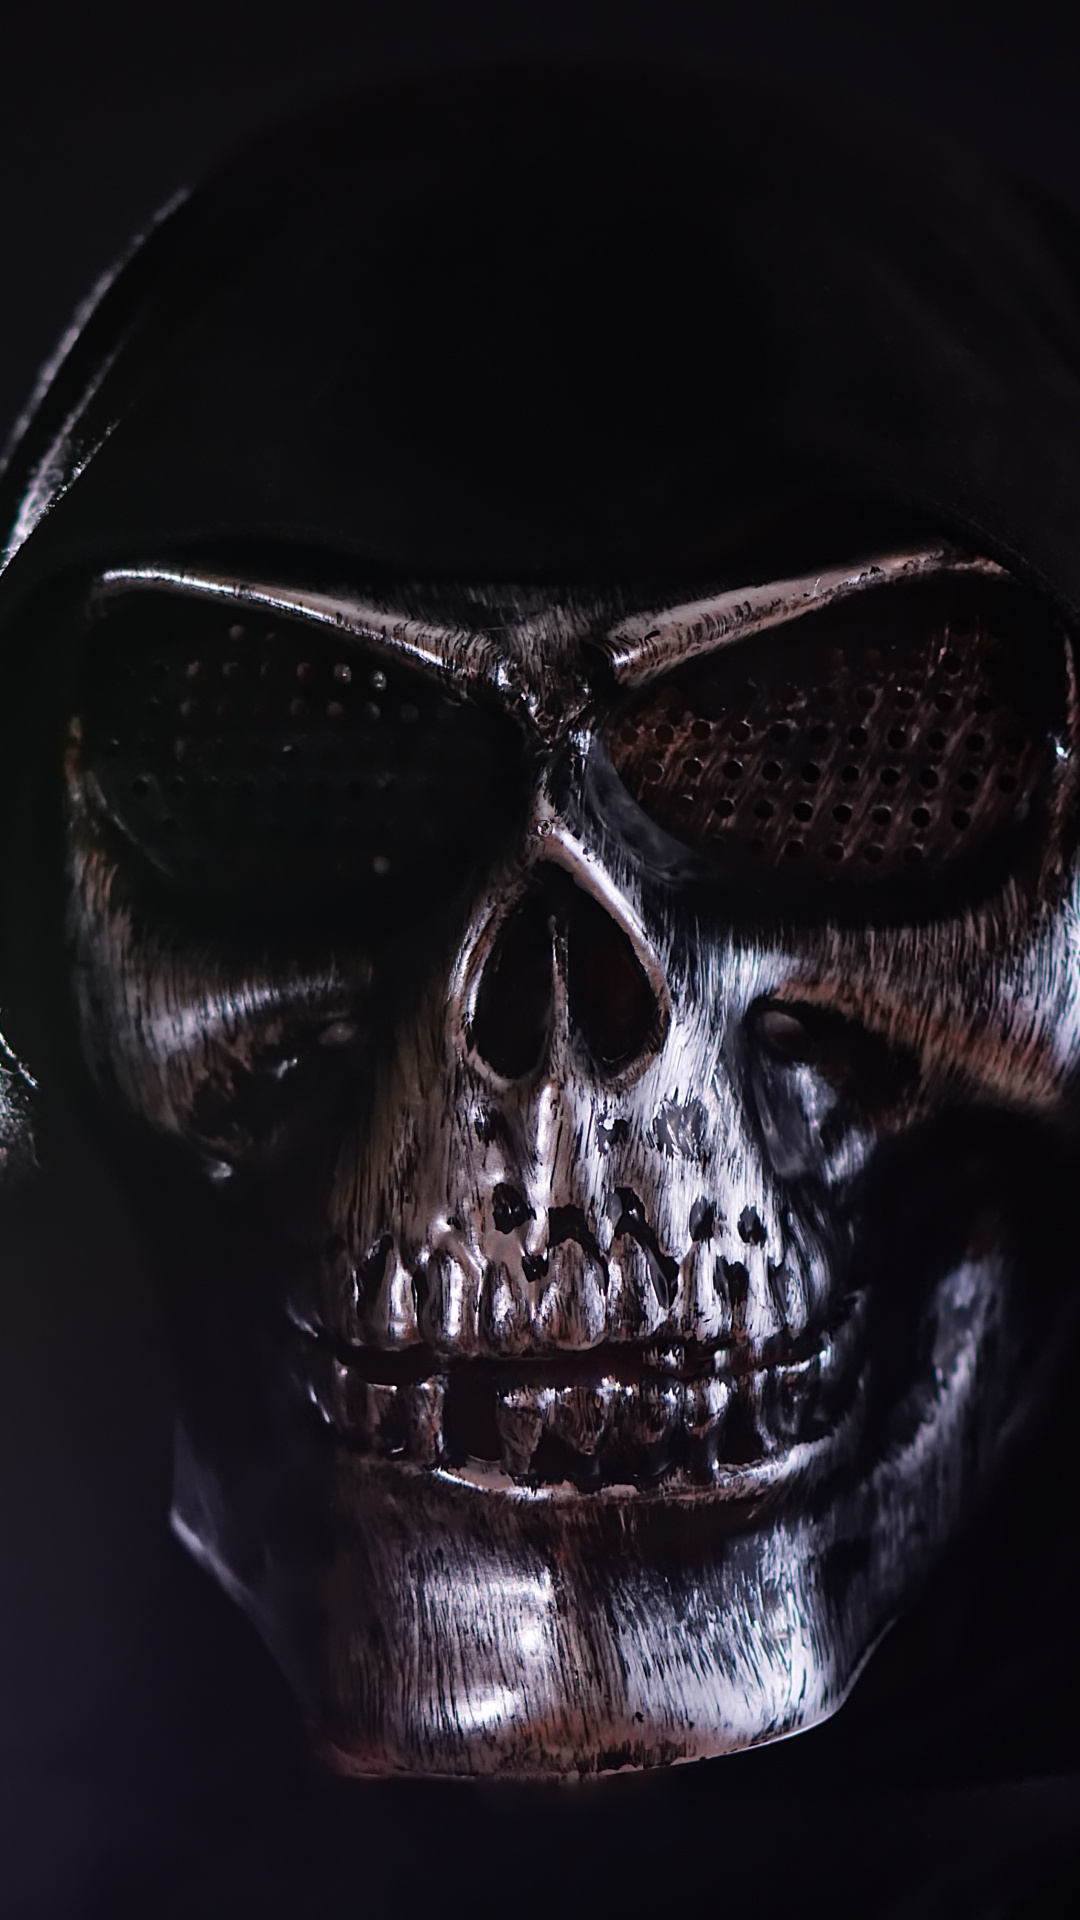 Masque de Crâne Noir et Argent. Wallpaper in 1080x1920 Resolution